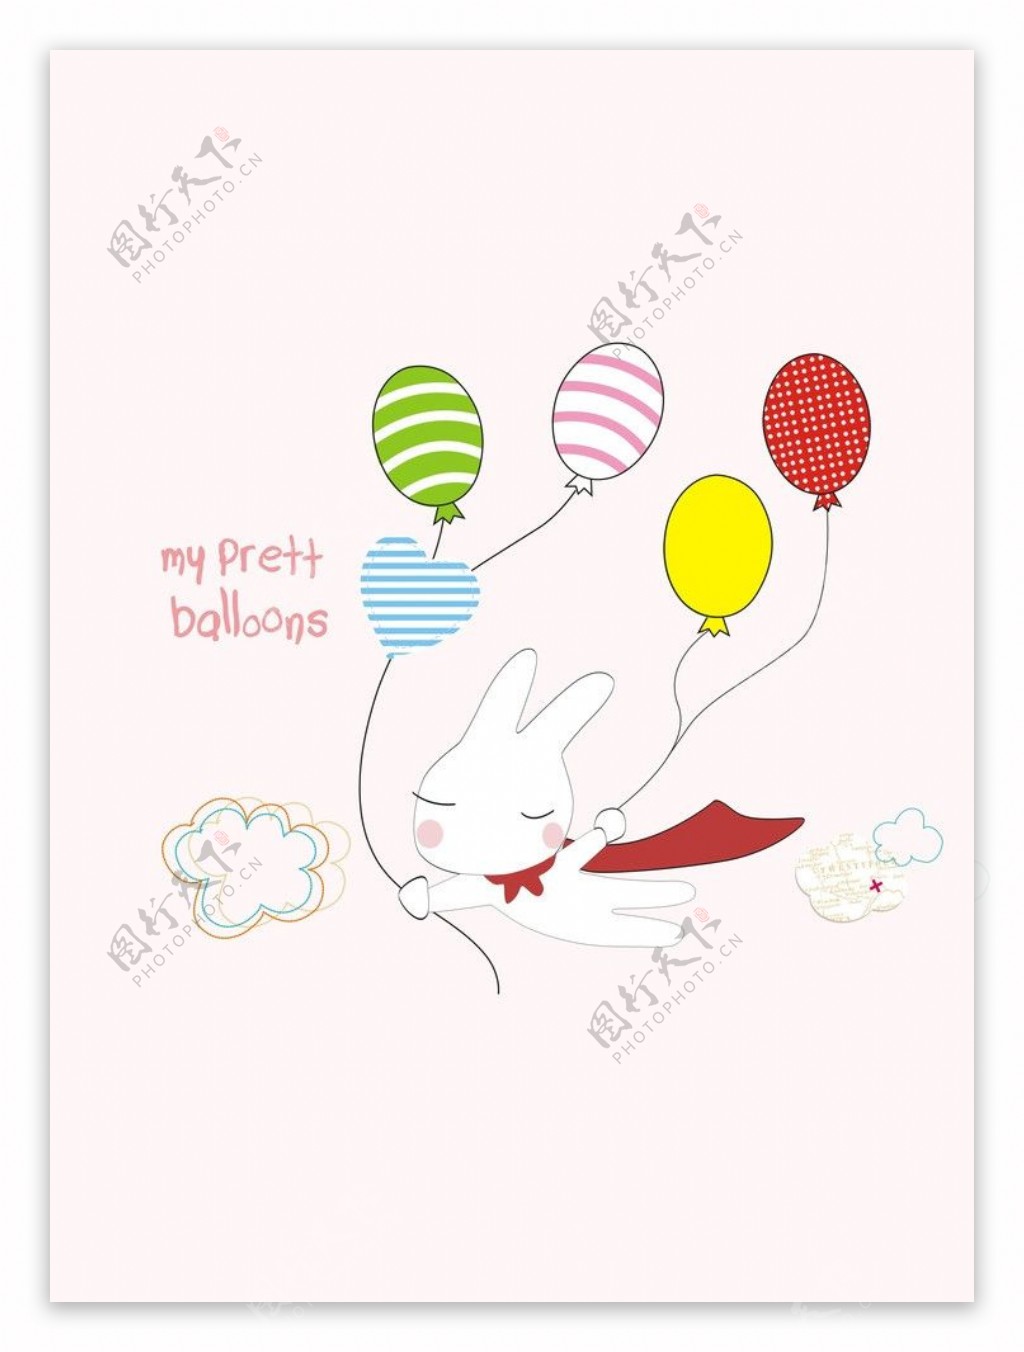 卡通气球兔子